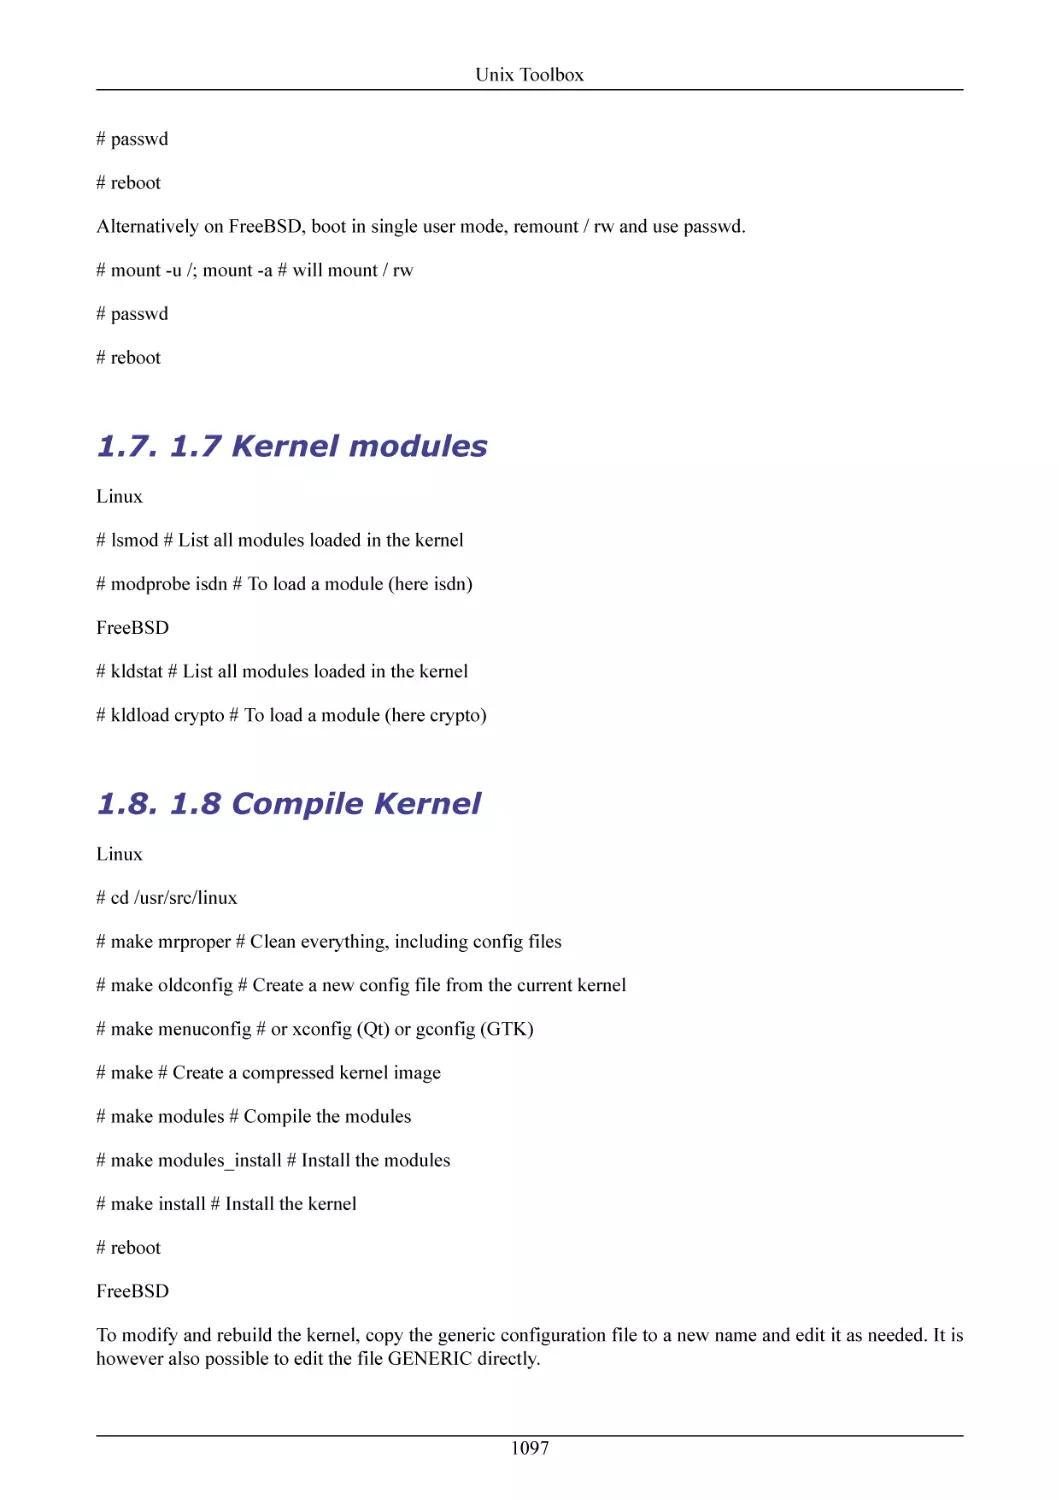 1.7 Kernel modules
1.8 Compile Kernel